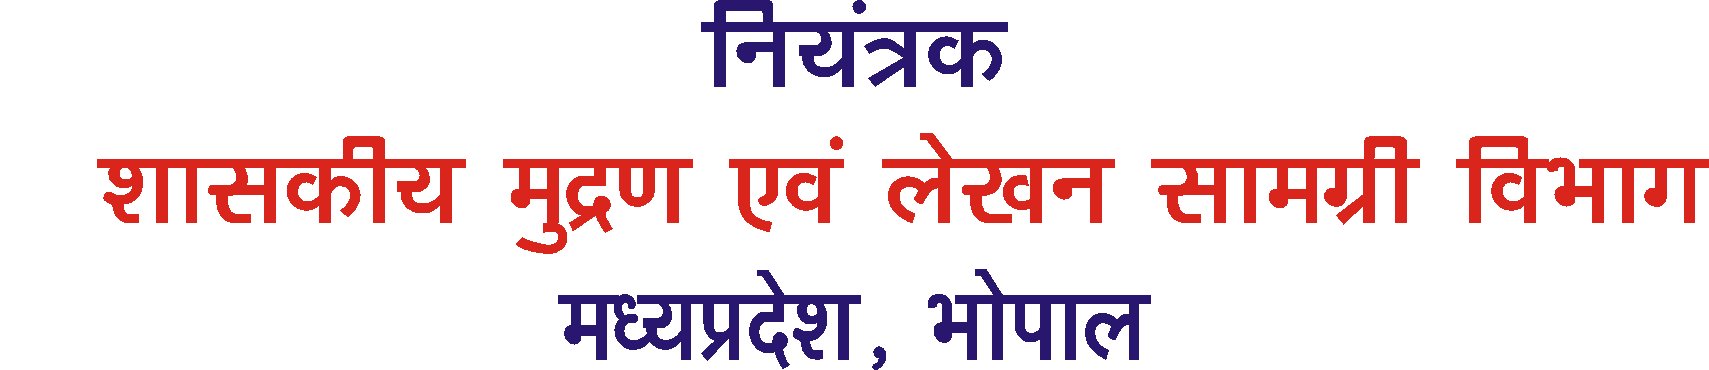 hindi banner